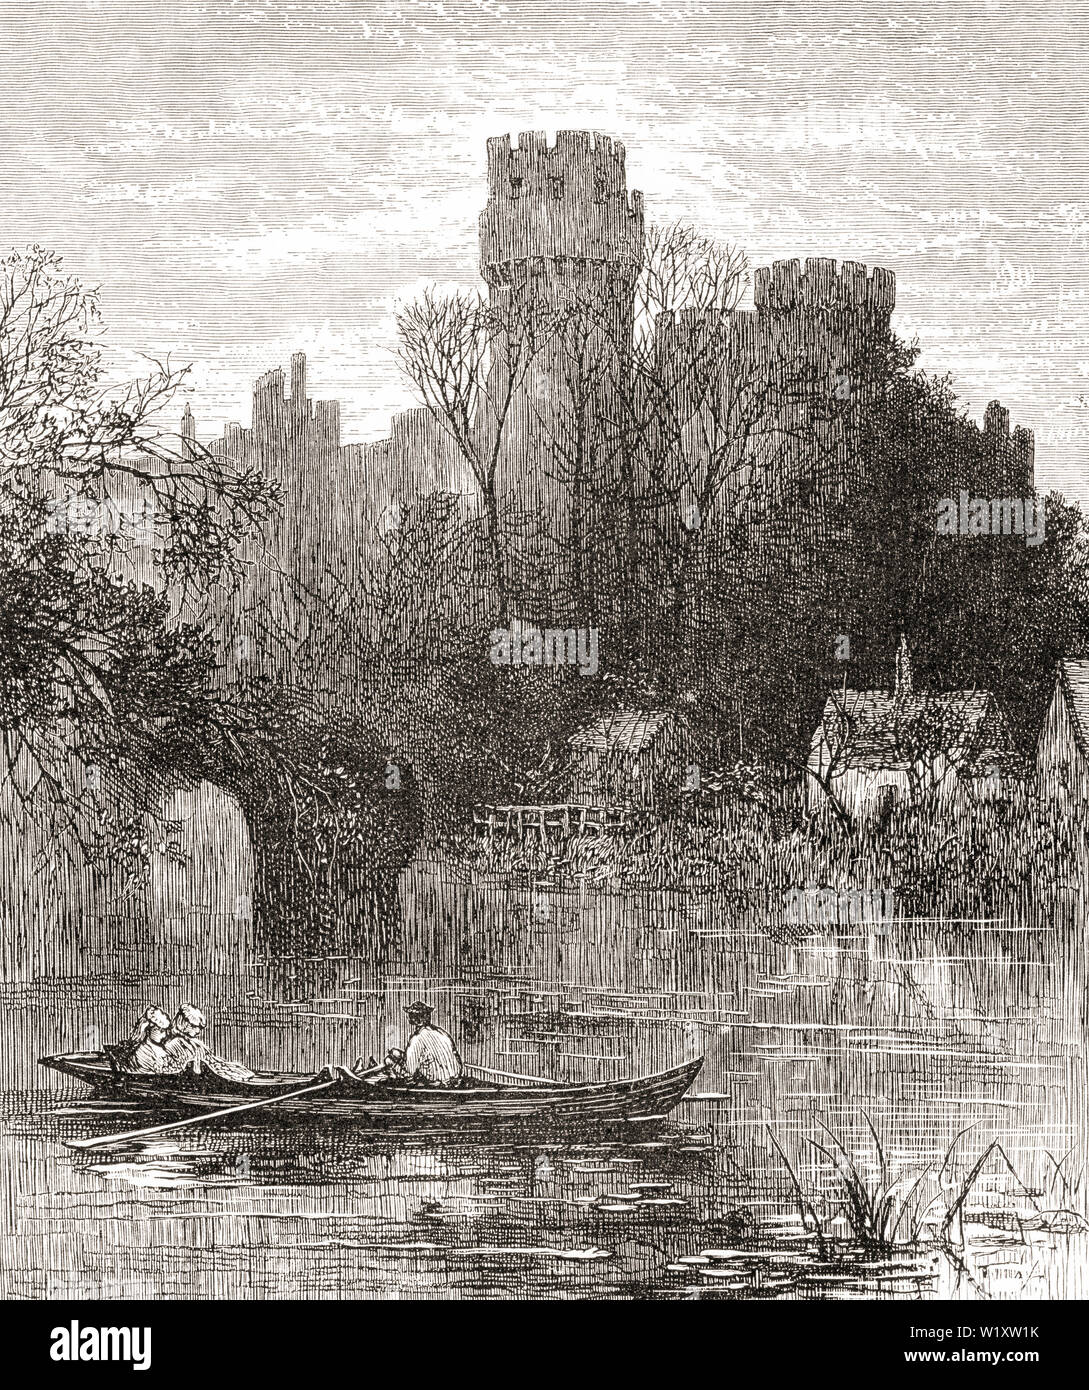 Warwick Castle, Warwick, Warwickshire, England, hier im 19. Jahrhundert. Aus dem Englischen Bilder, veröffentlicht 1890. Stockfoto